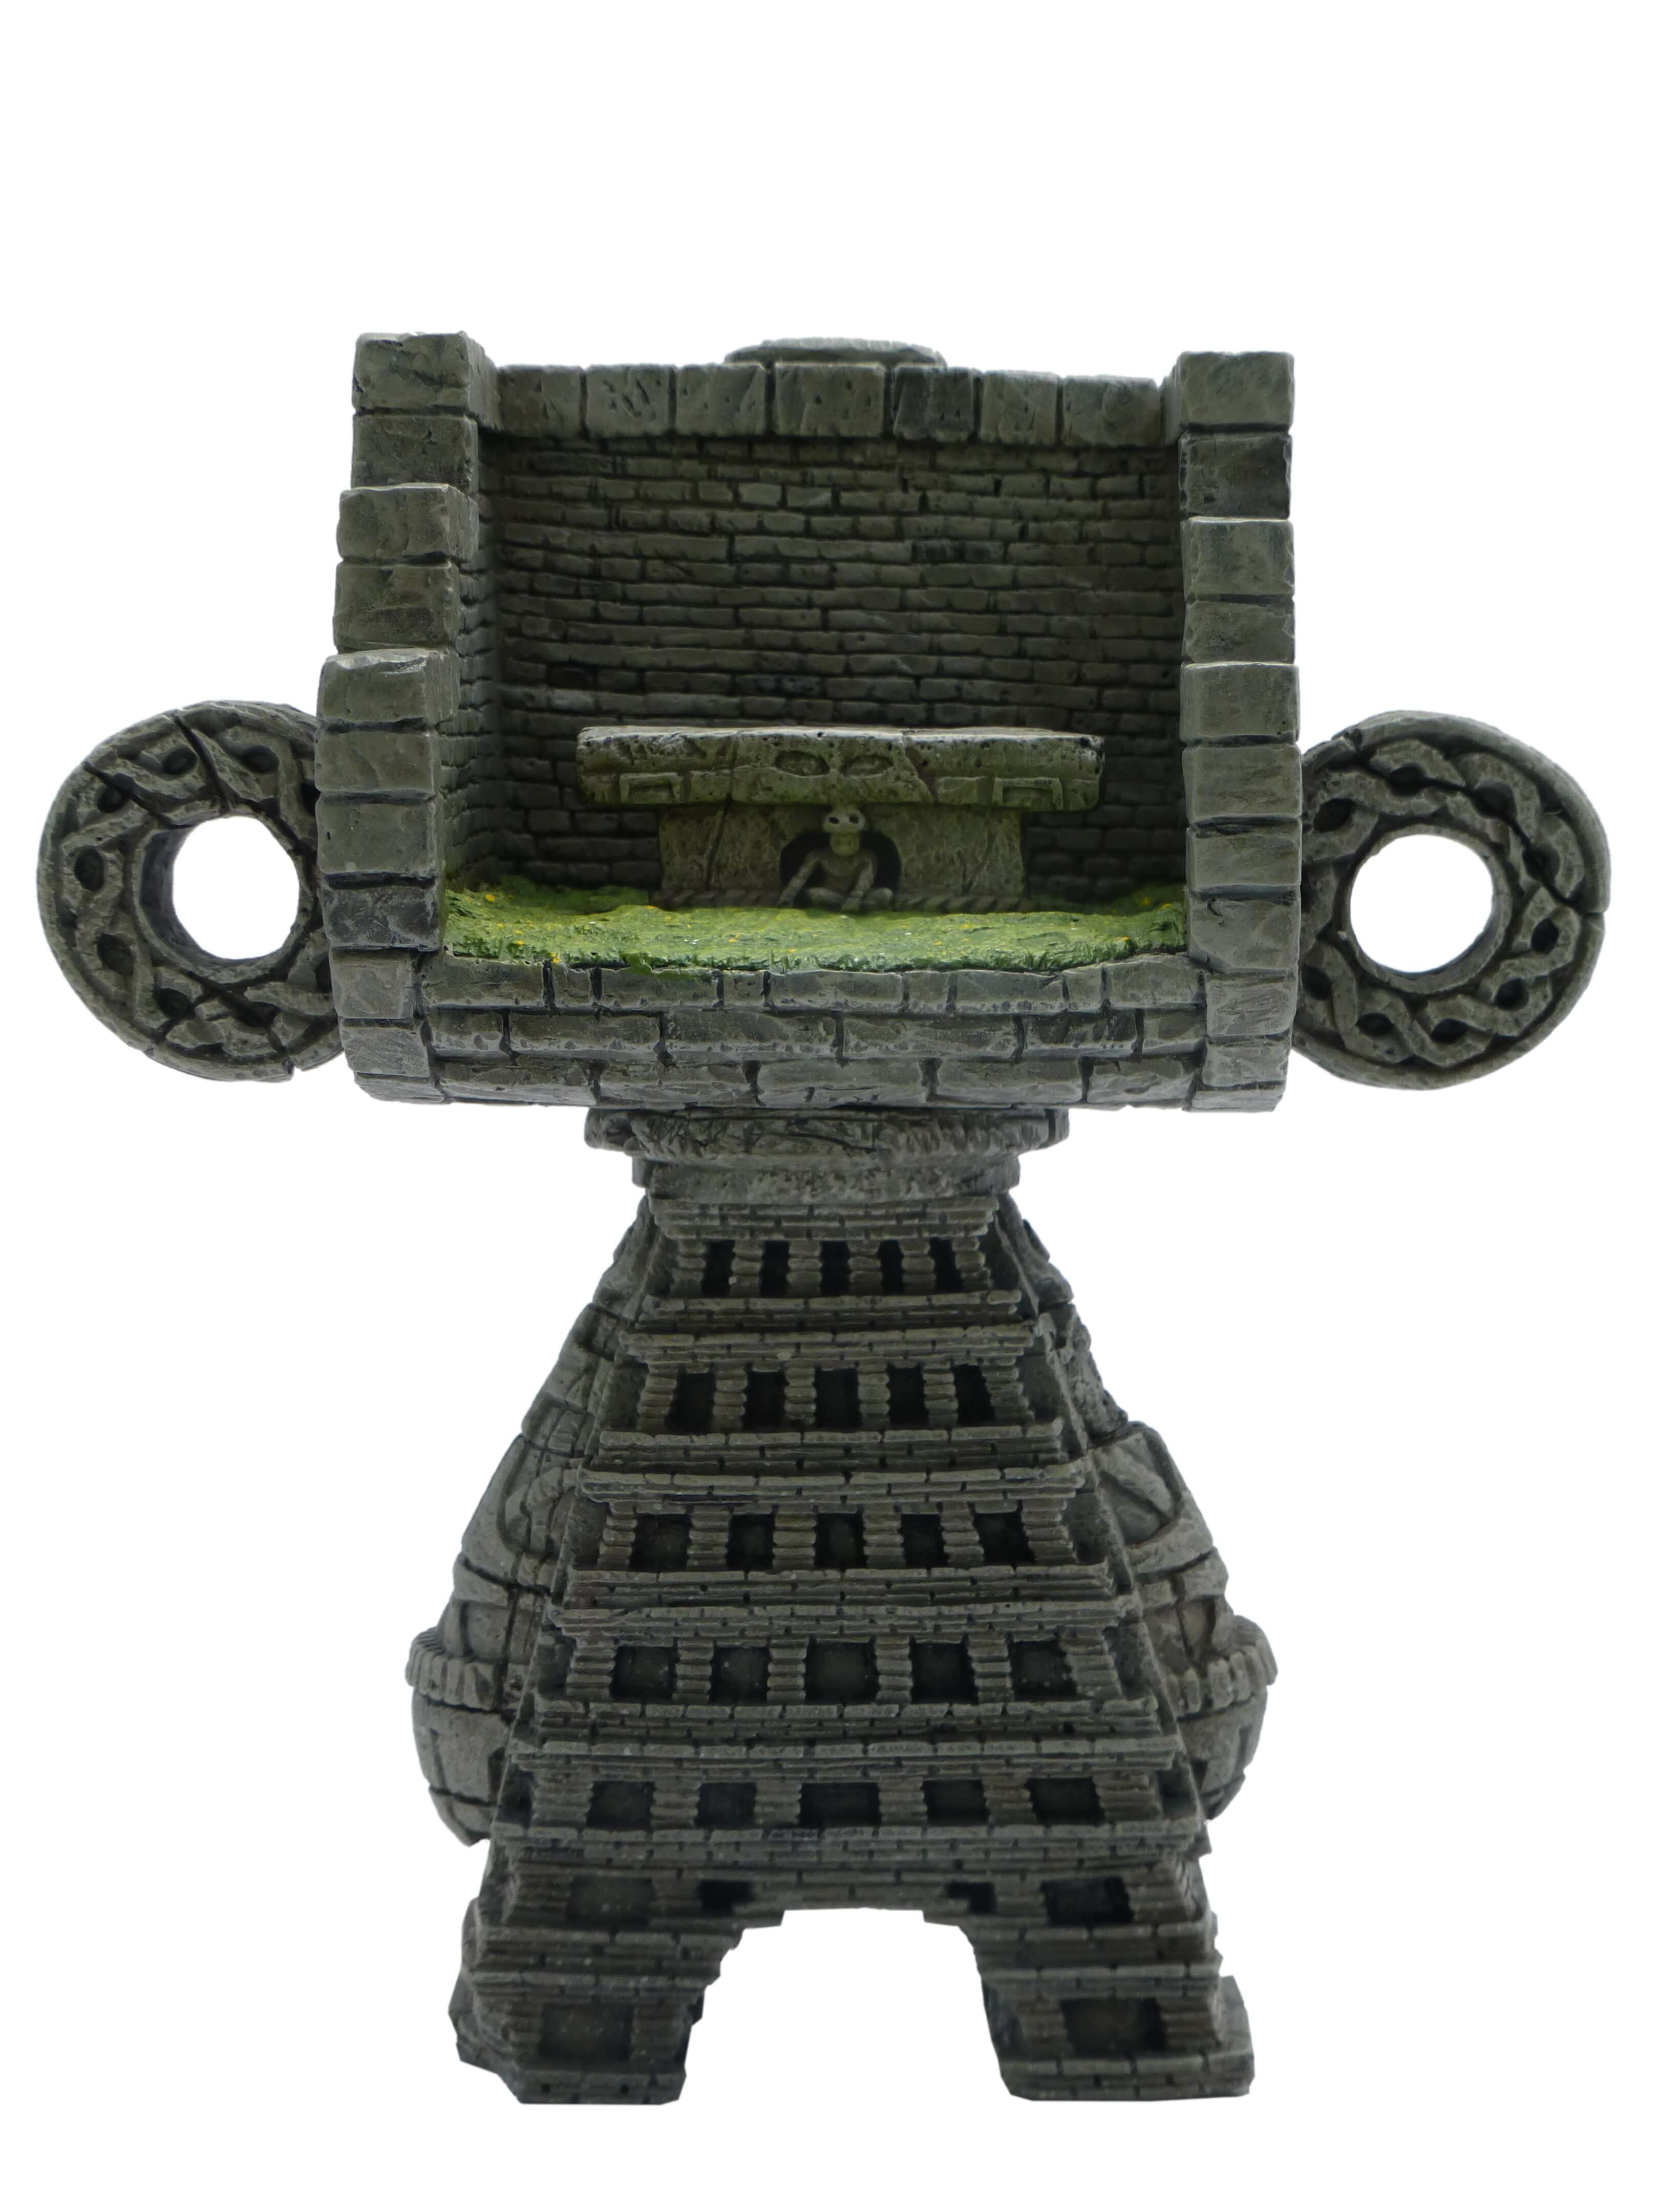 'Angkor Goss' - 5" Custom Madl 1